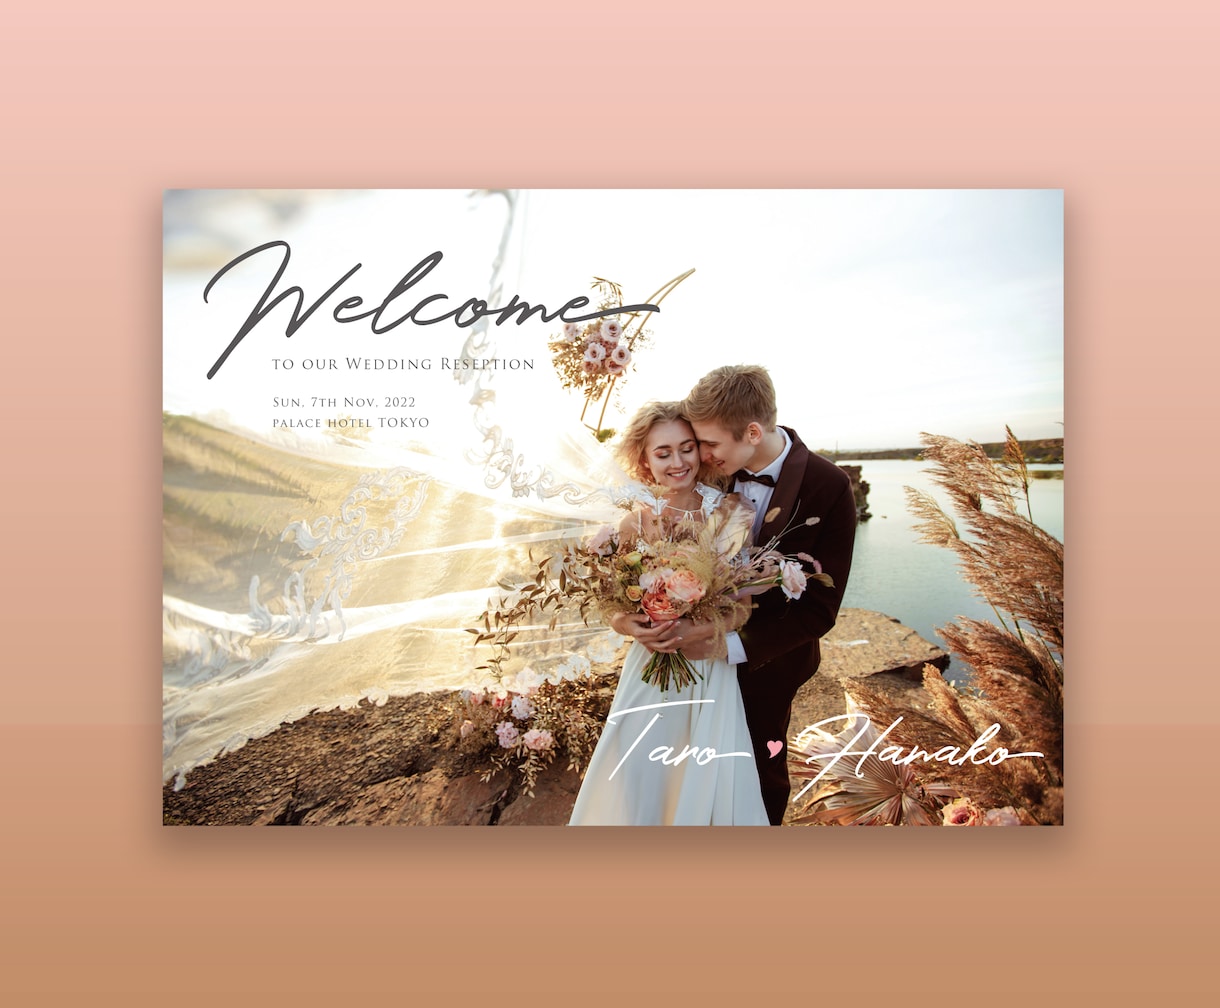 パネル印刷仕様の結婚式ウェルカムボードお届けします 前撮り写真を基にデザイン、パネル仕様にて印刷〜ご納品します イメージ1